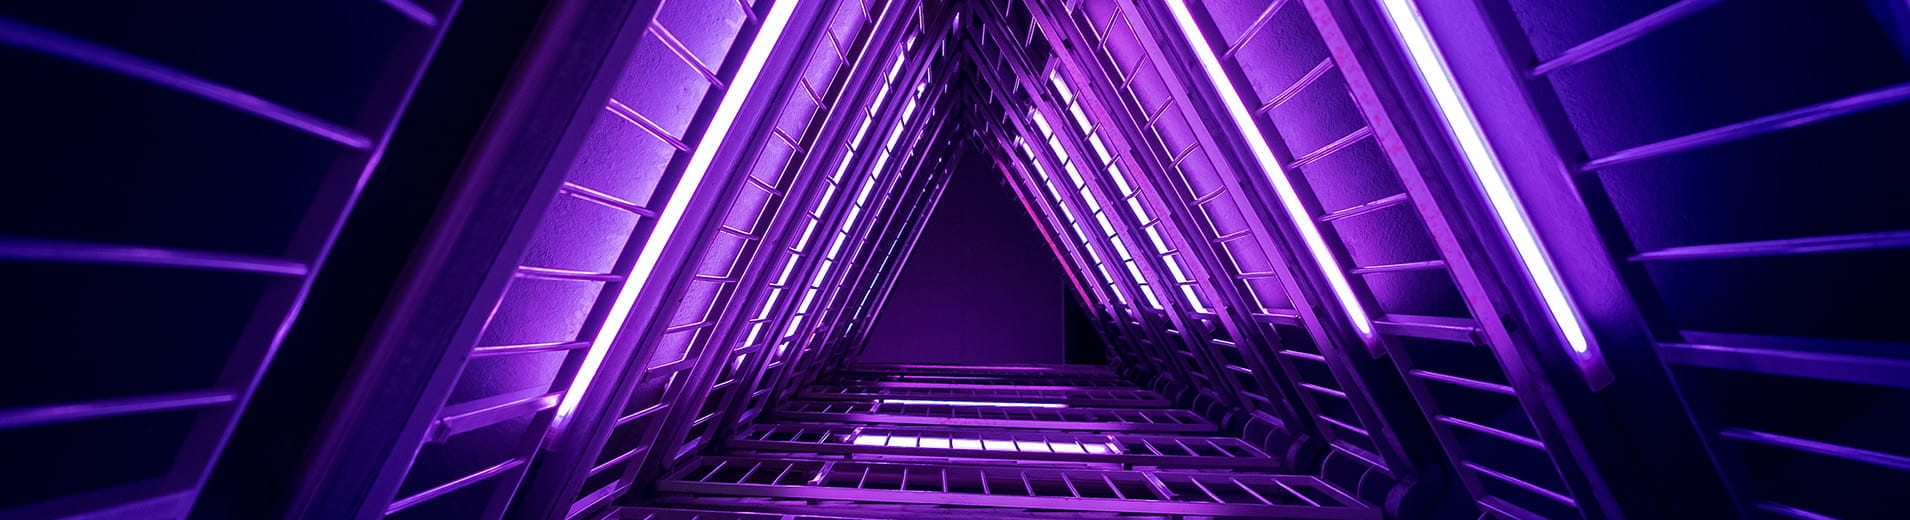 Neon_Stairwell_P_1129